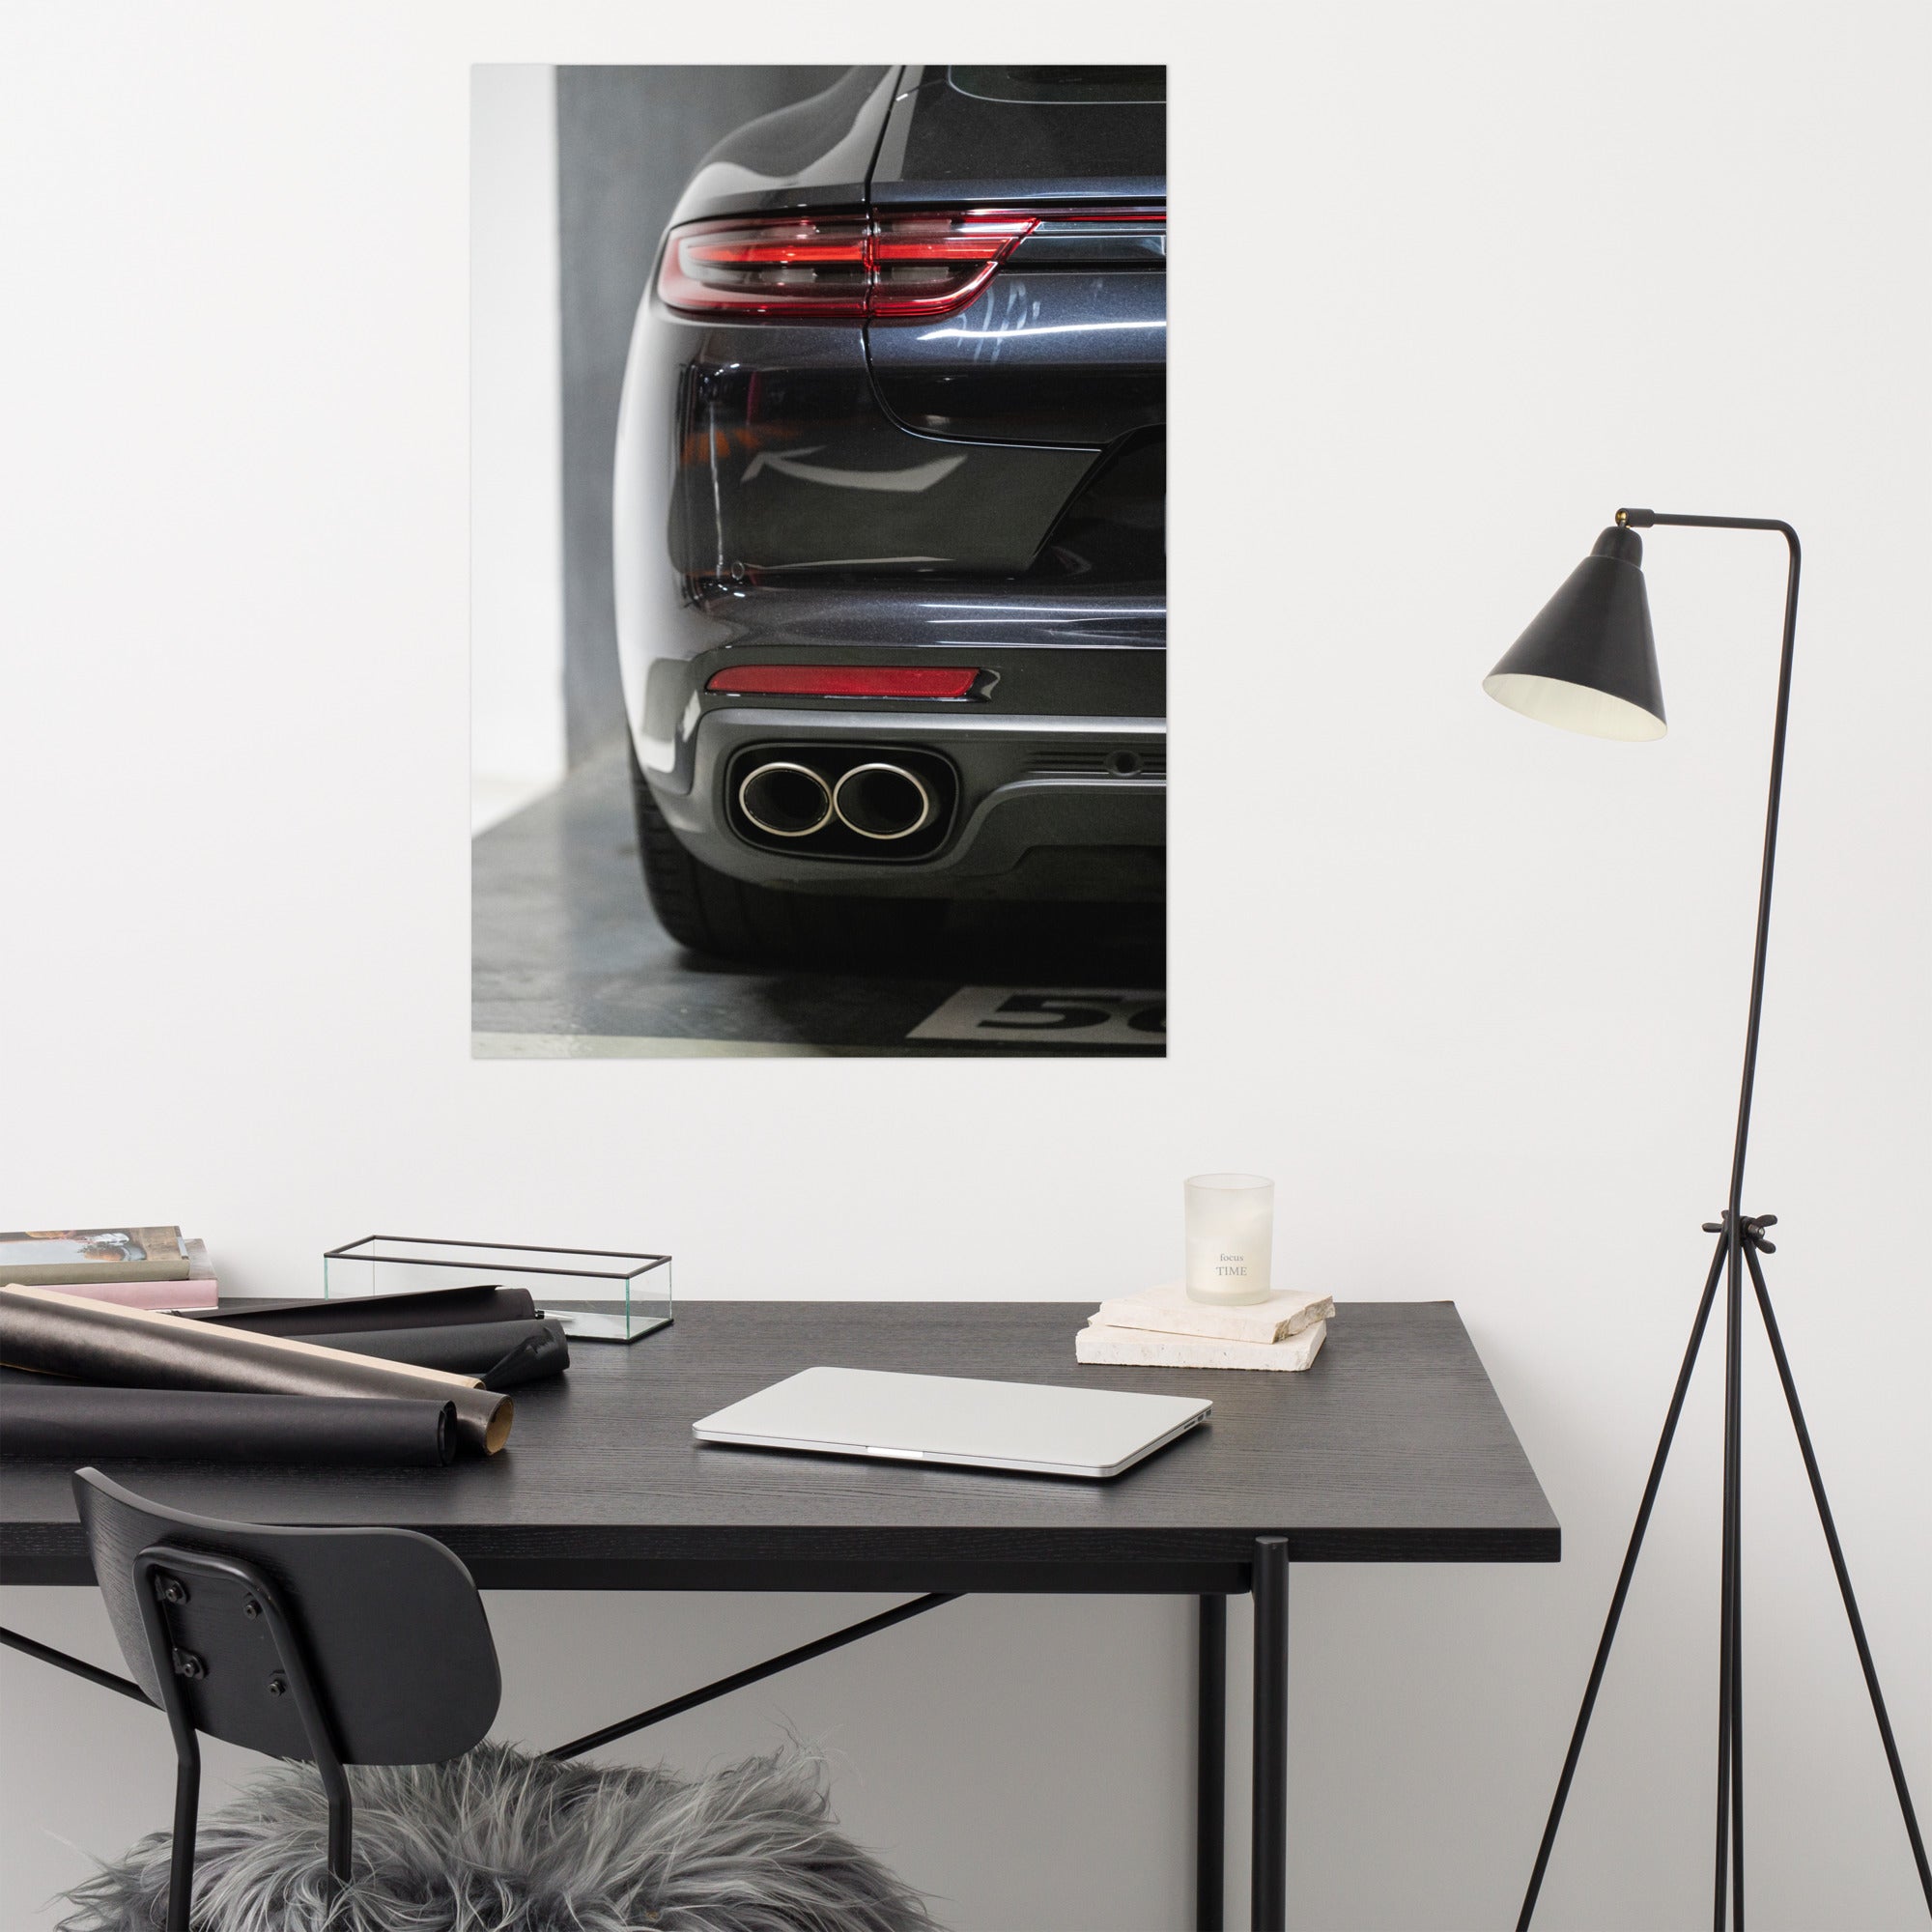 Porsche Panamera N03 - Poster - La boutique du poster Français